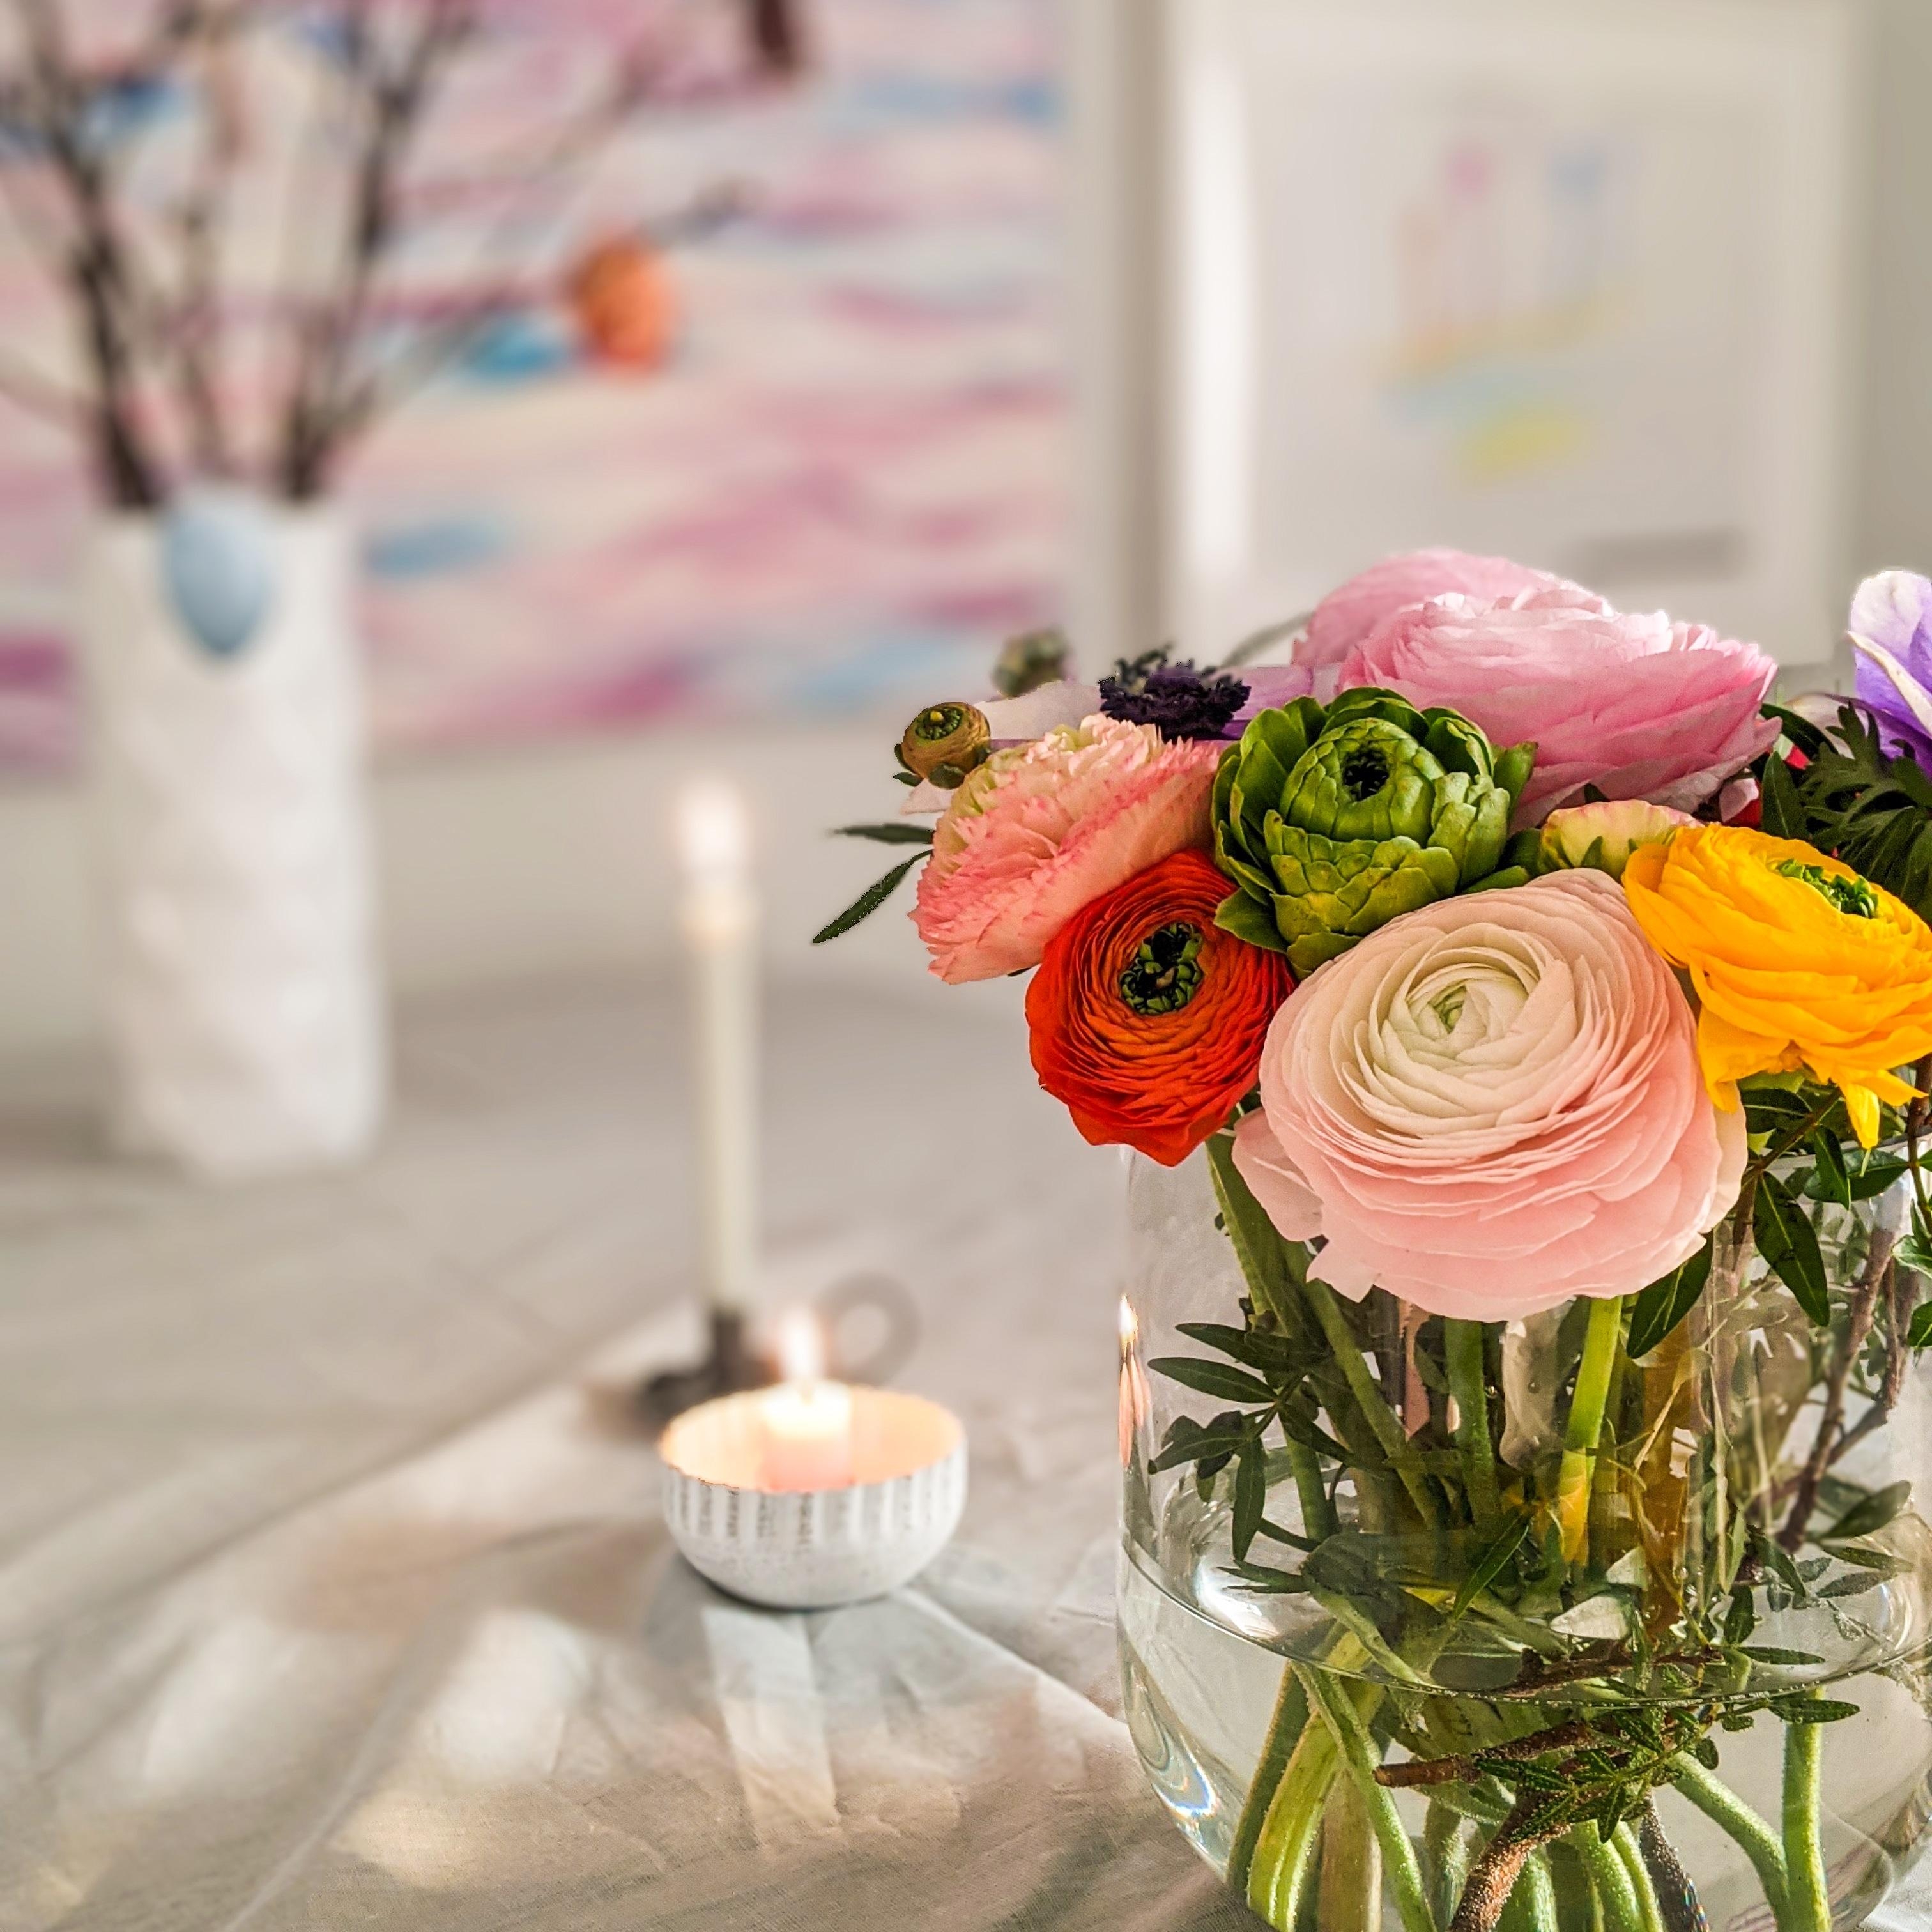 Blumengruß zum Wochenende #tischdeko #farbe #ranunkeln #Blumen #bunt #vase #kerze #detailverliebt